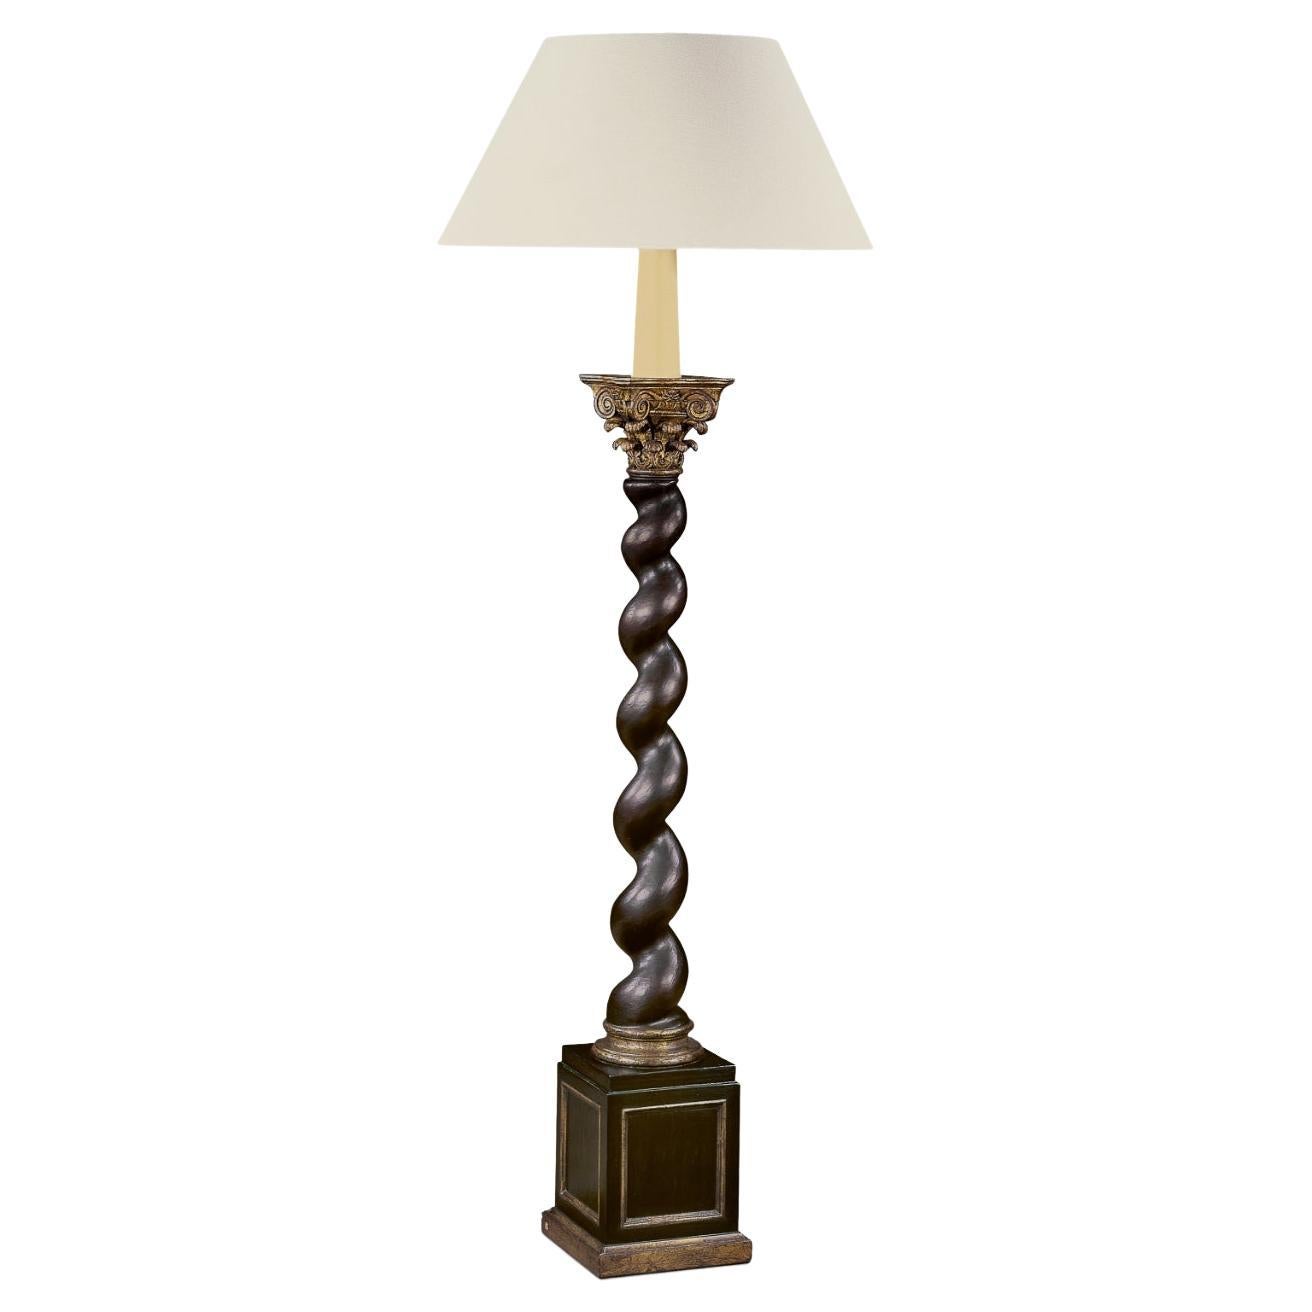 Lampe Salomonic Twist inspire par des colonnes avec tige torsade et chapiteau corinthien